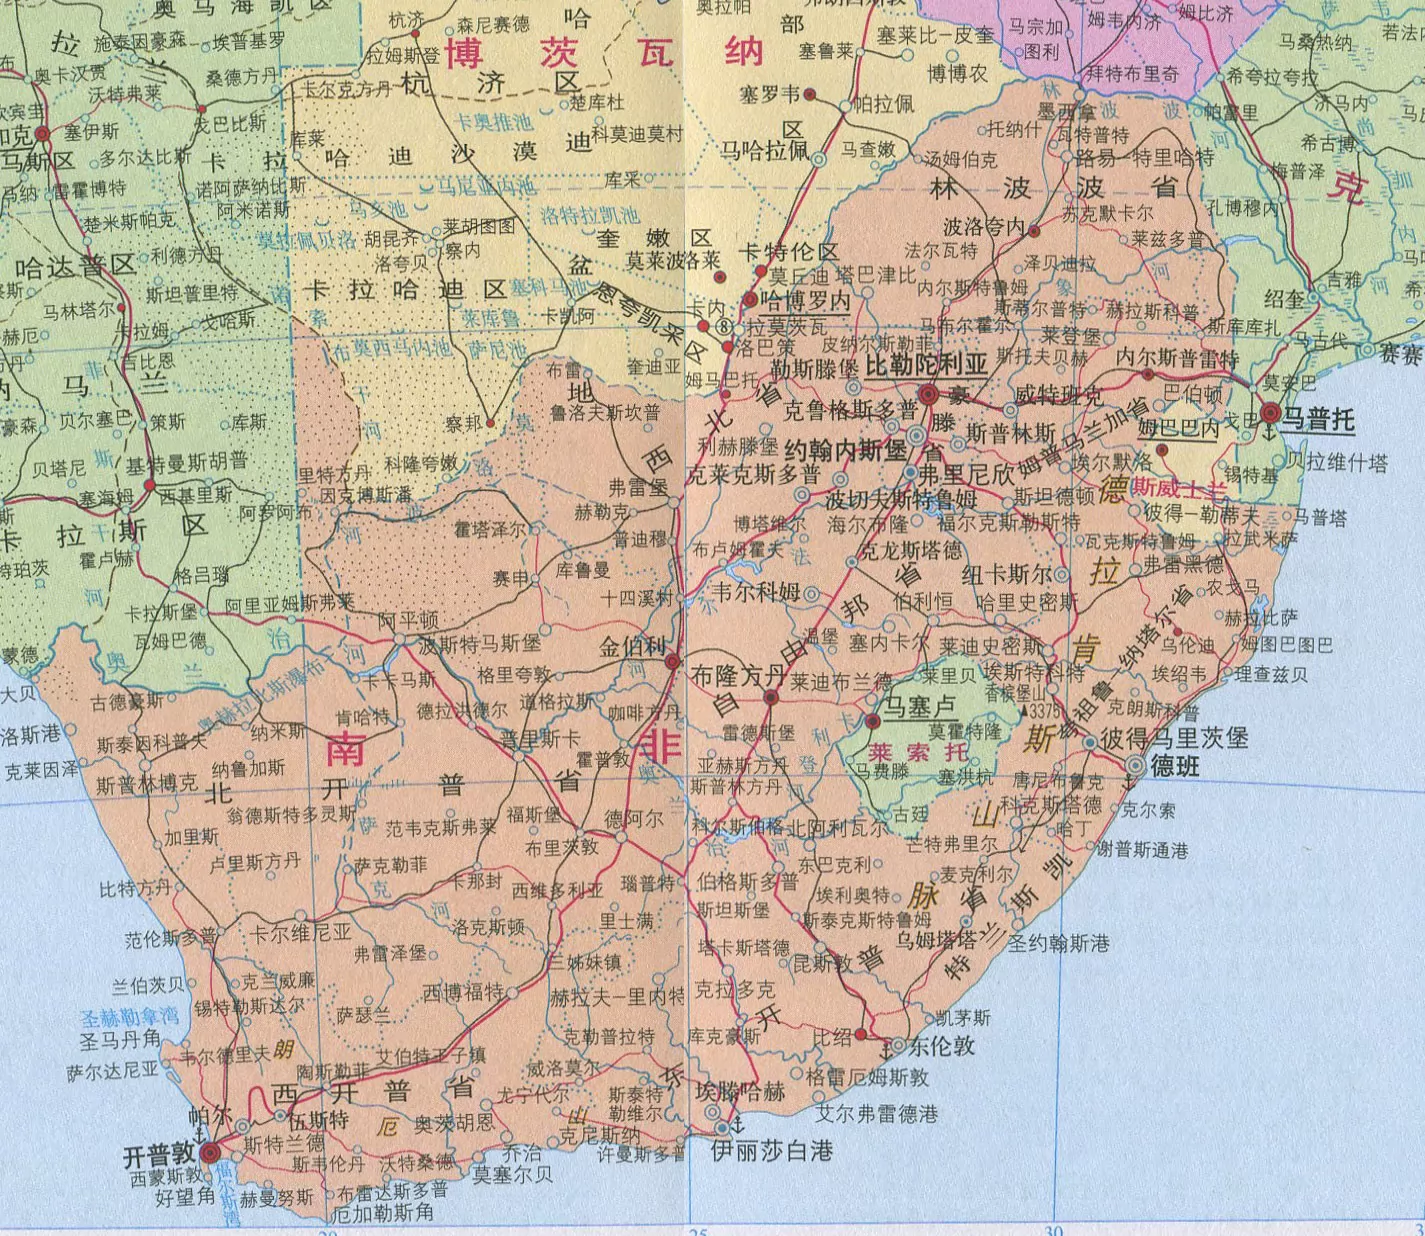 南非交通旅游地图 - 南非地图 - 地理教师网